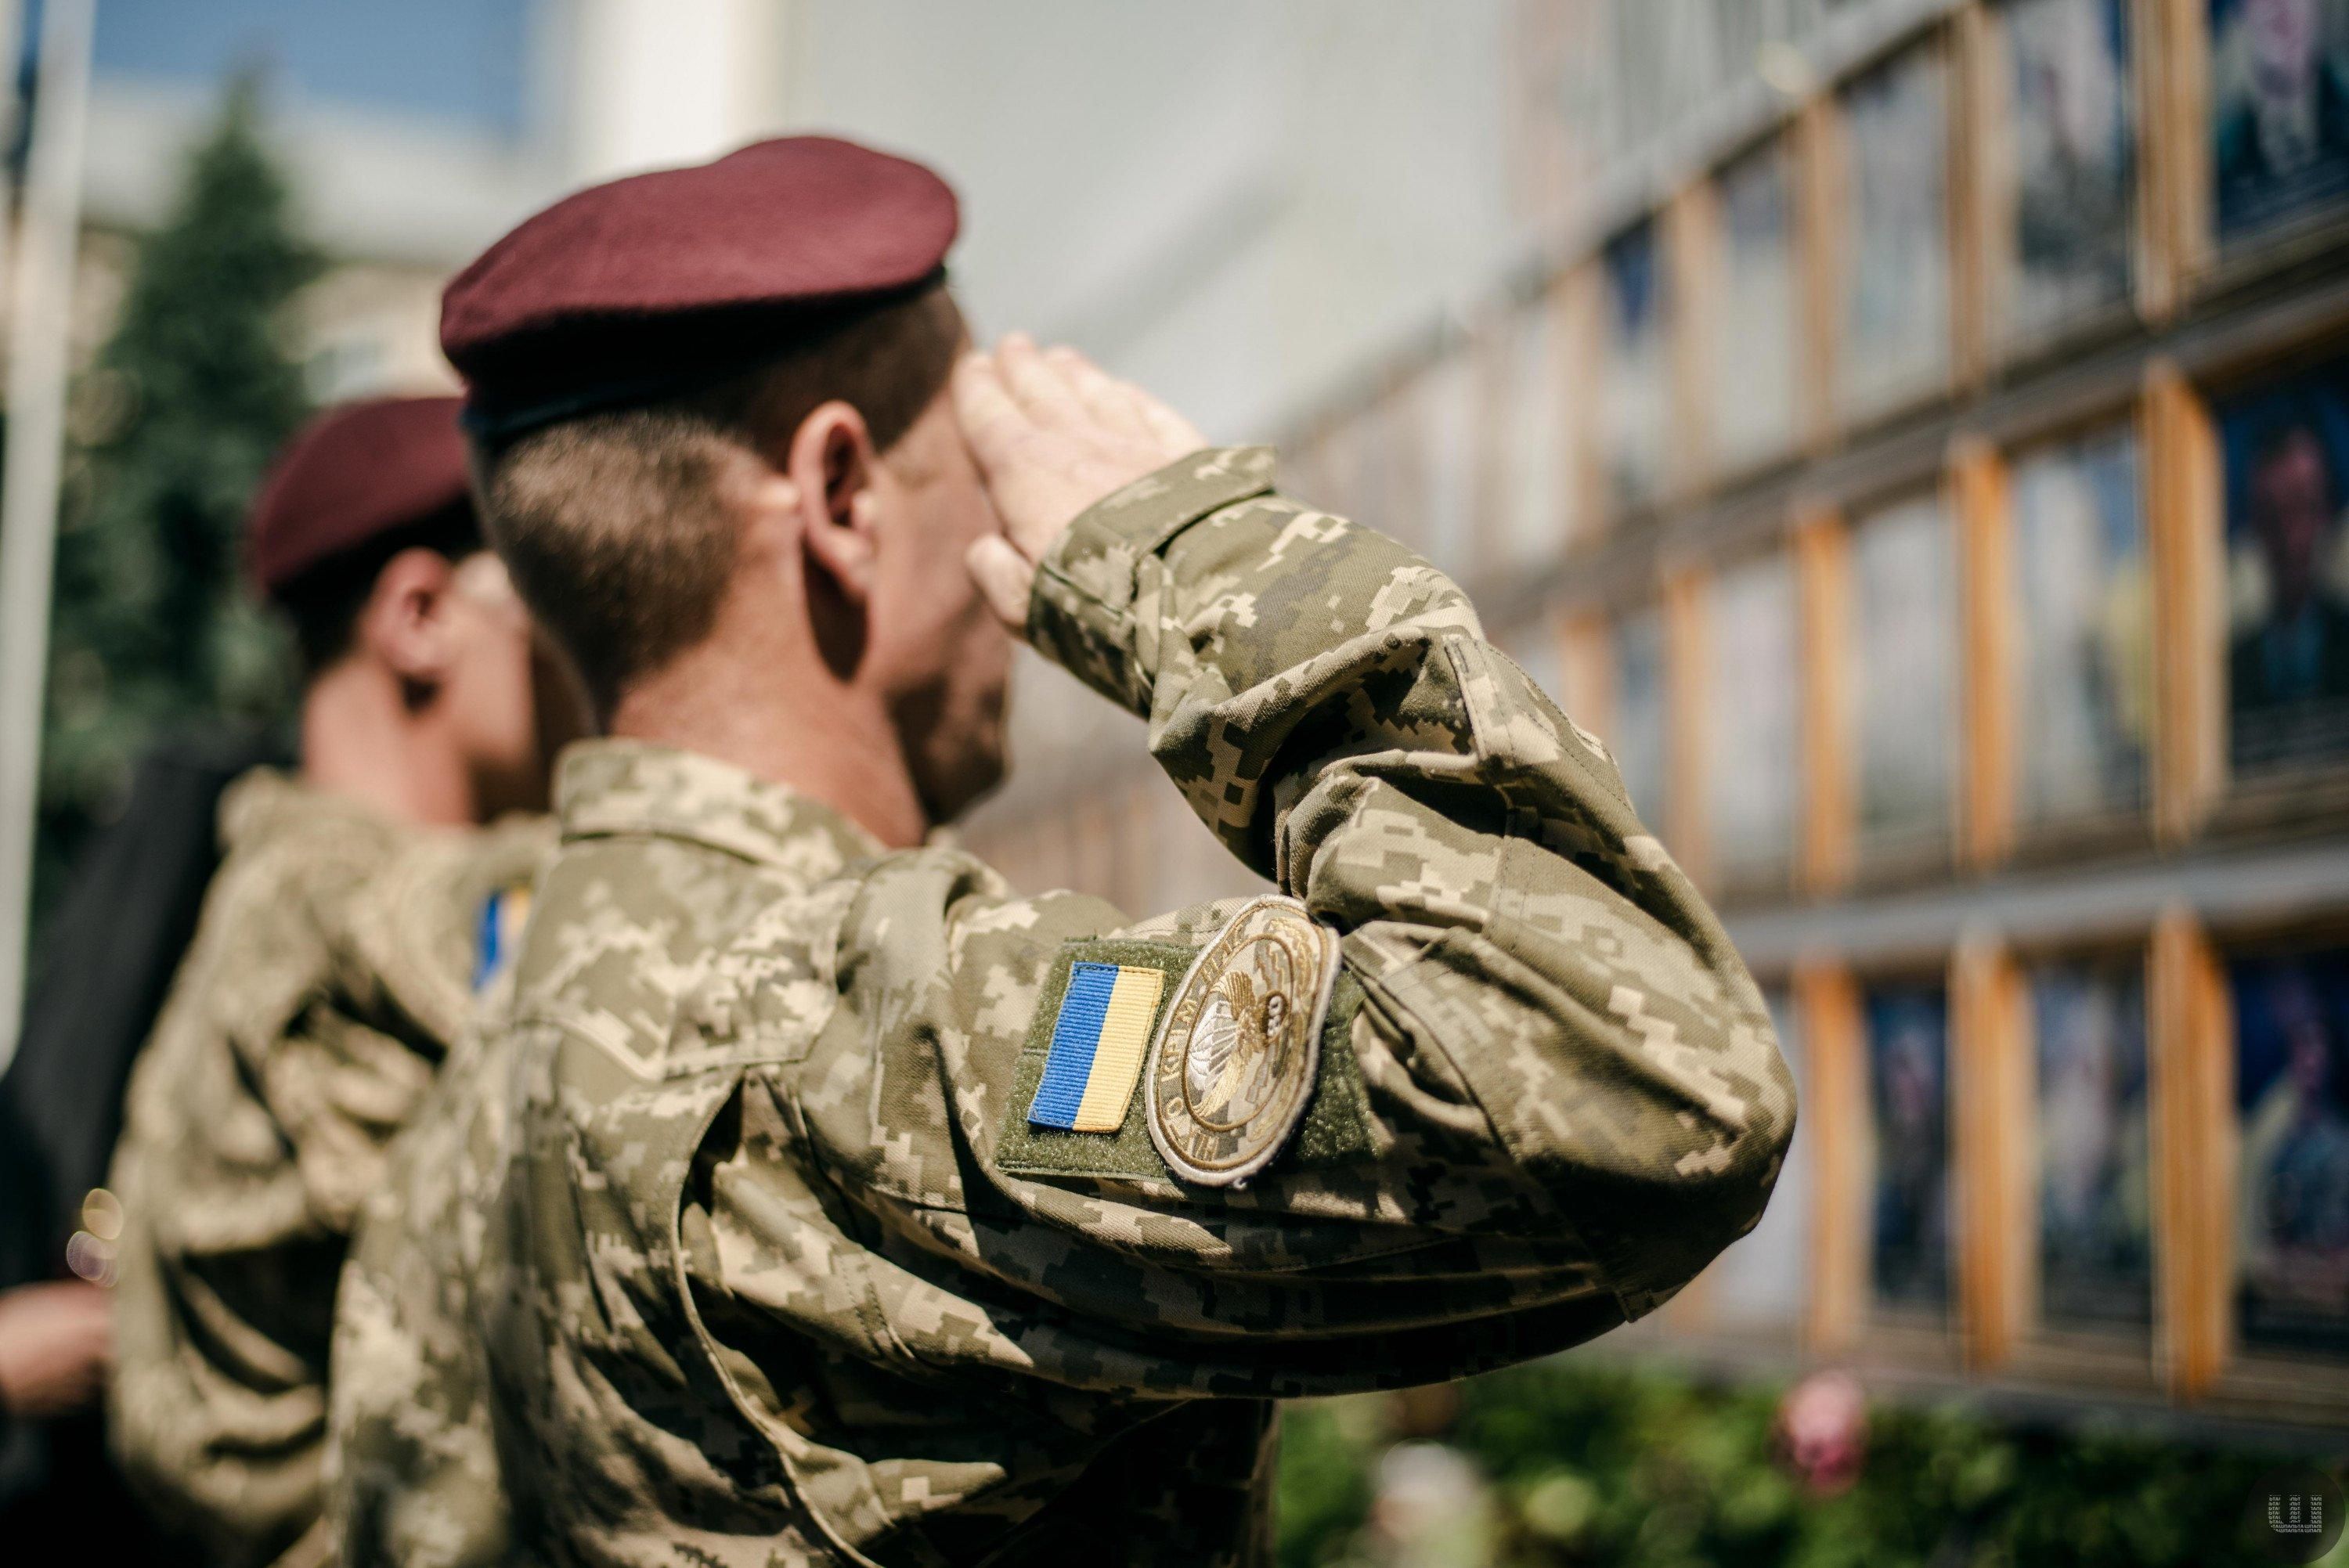 Похороны Кернеса в Харькове: военные не будут участвовать в церемонии